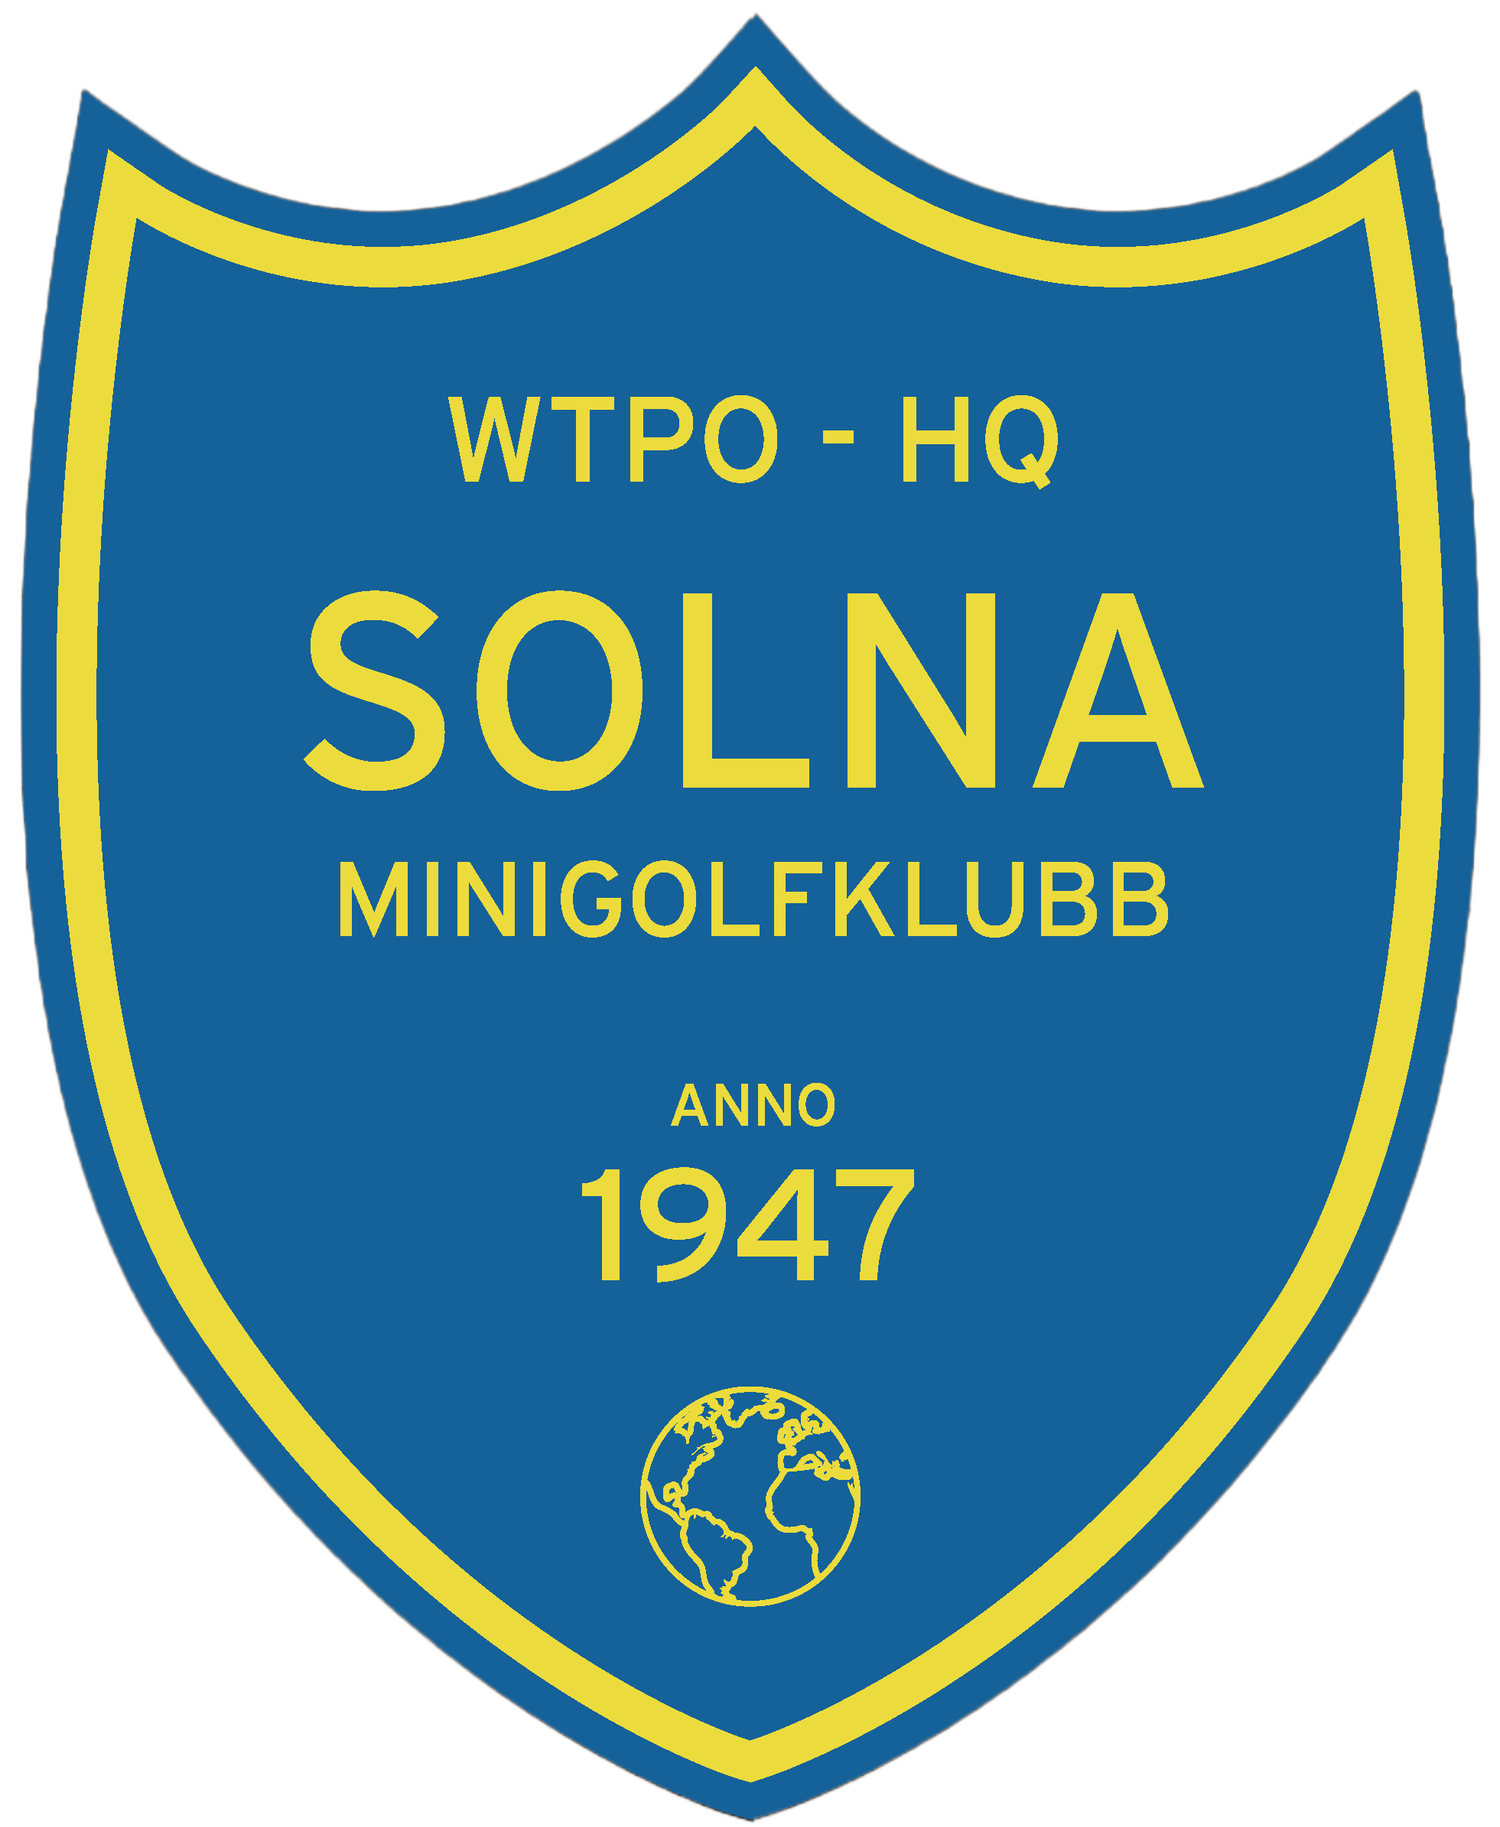 Solna MiniGolf